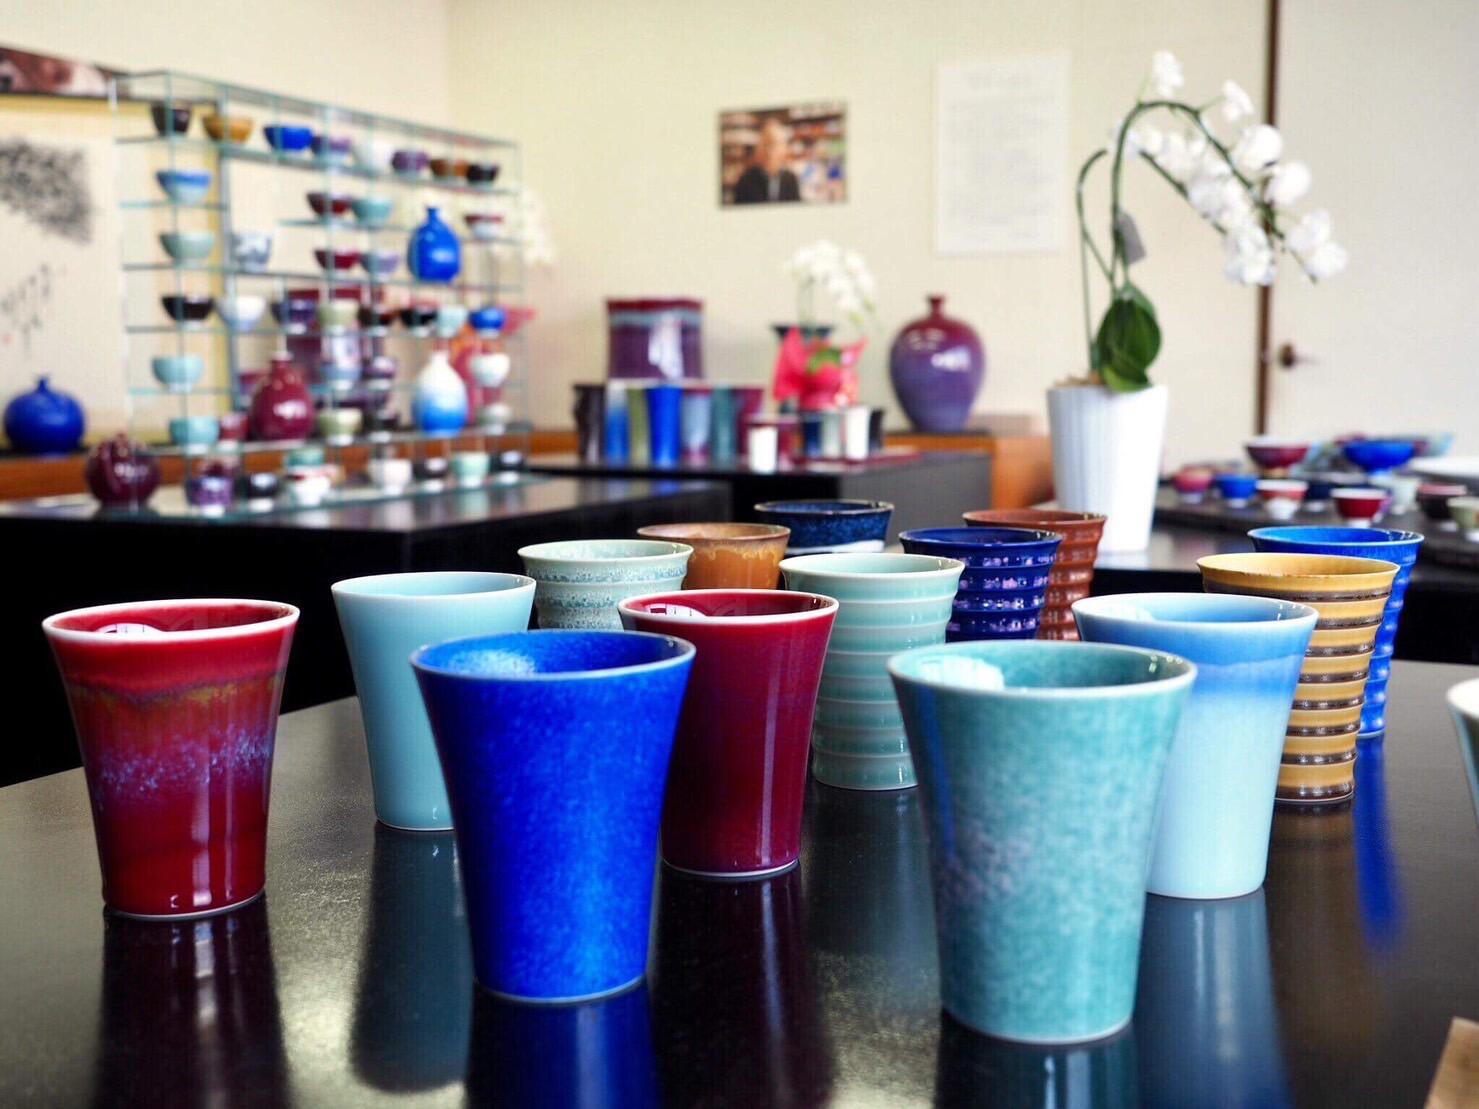 ギャラリー内は色とりどりの器やカップなど多数取り揃えてあります。